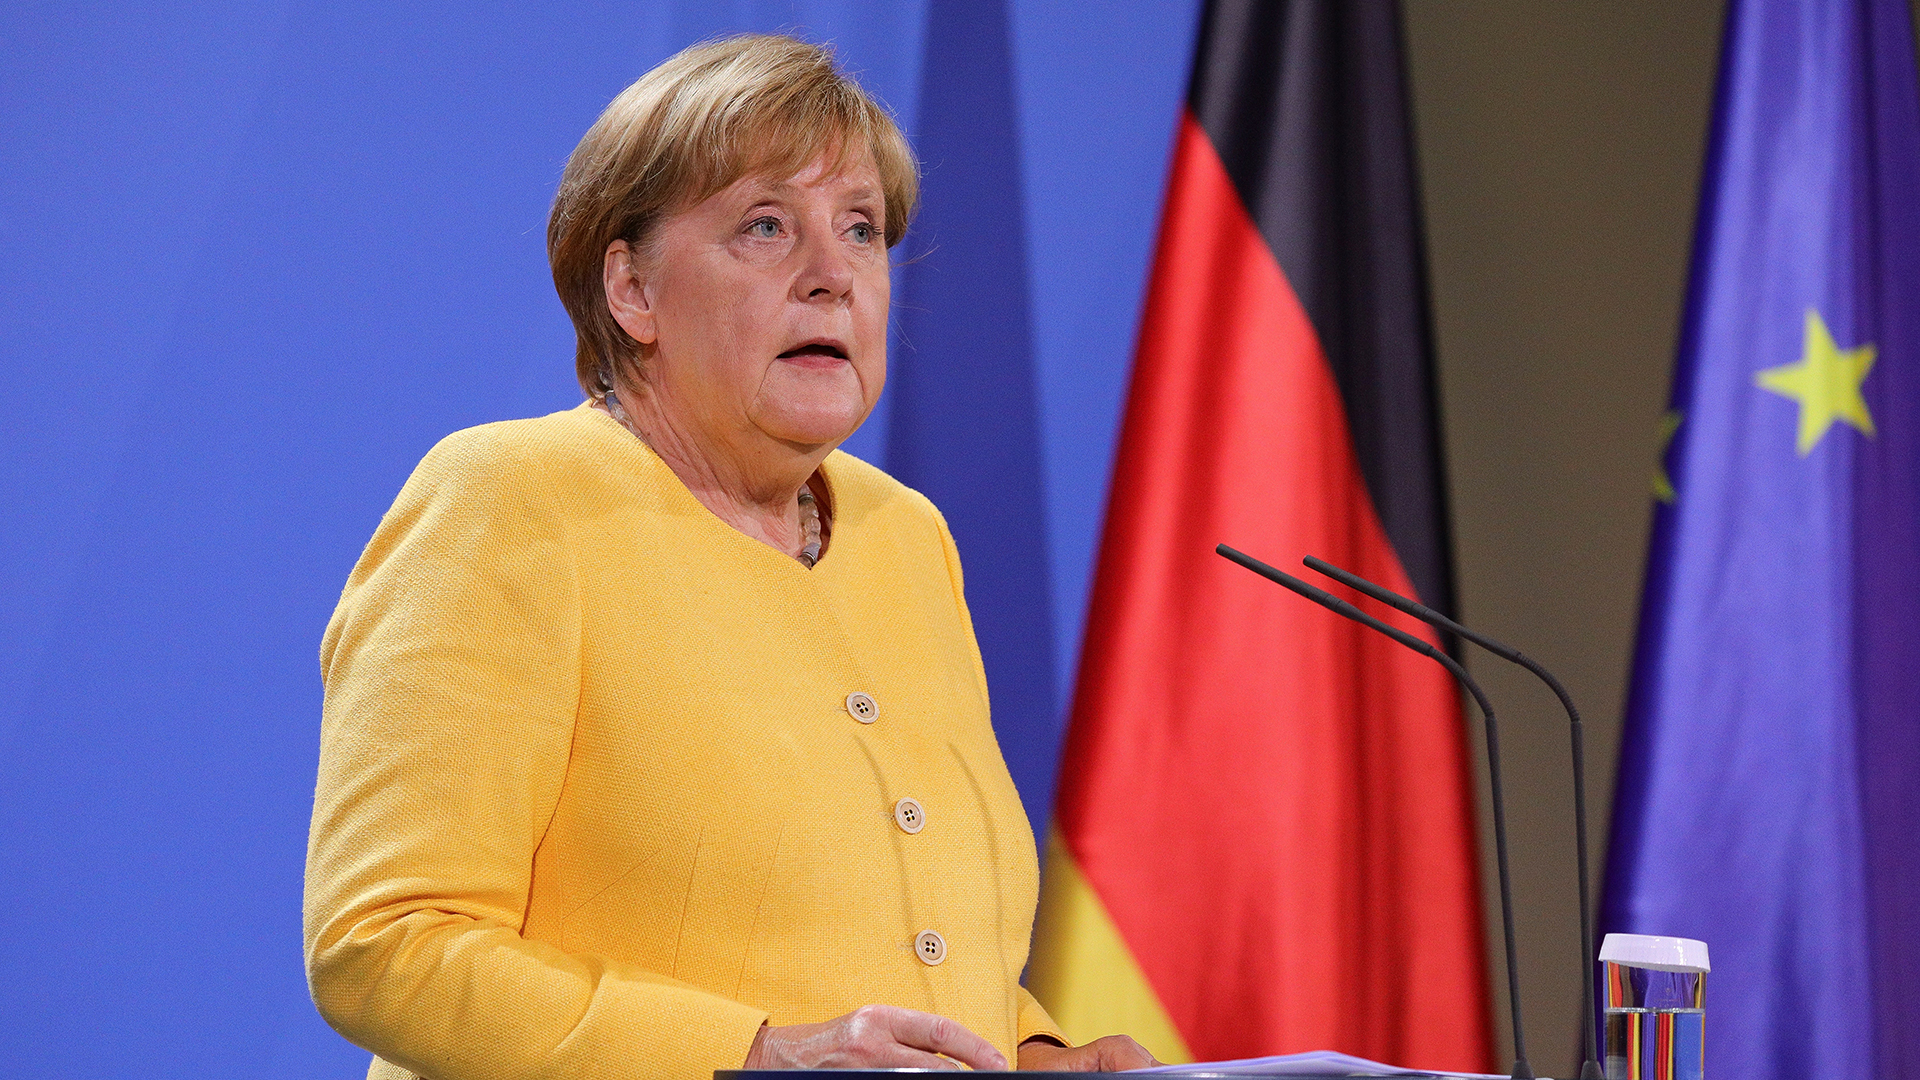 Merkel reconoce que Alemania se equivocó al evaluar la situación en Afganistán